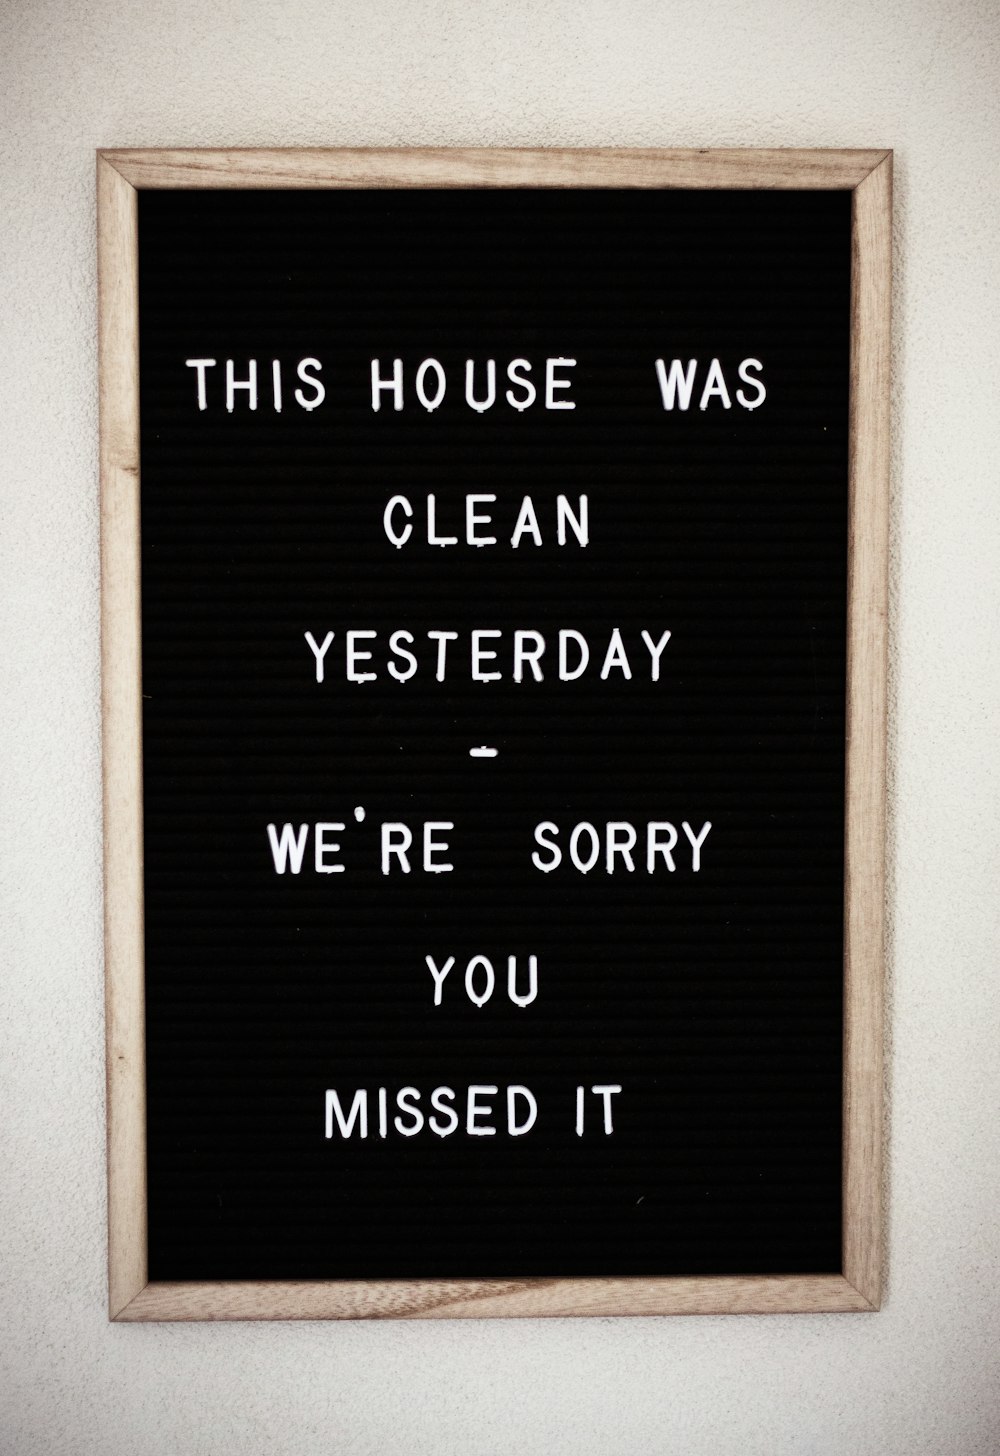 この家は昨日きれいでした、私たちはあなたがそれを見逃して申し訳ありませんテキスト